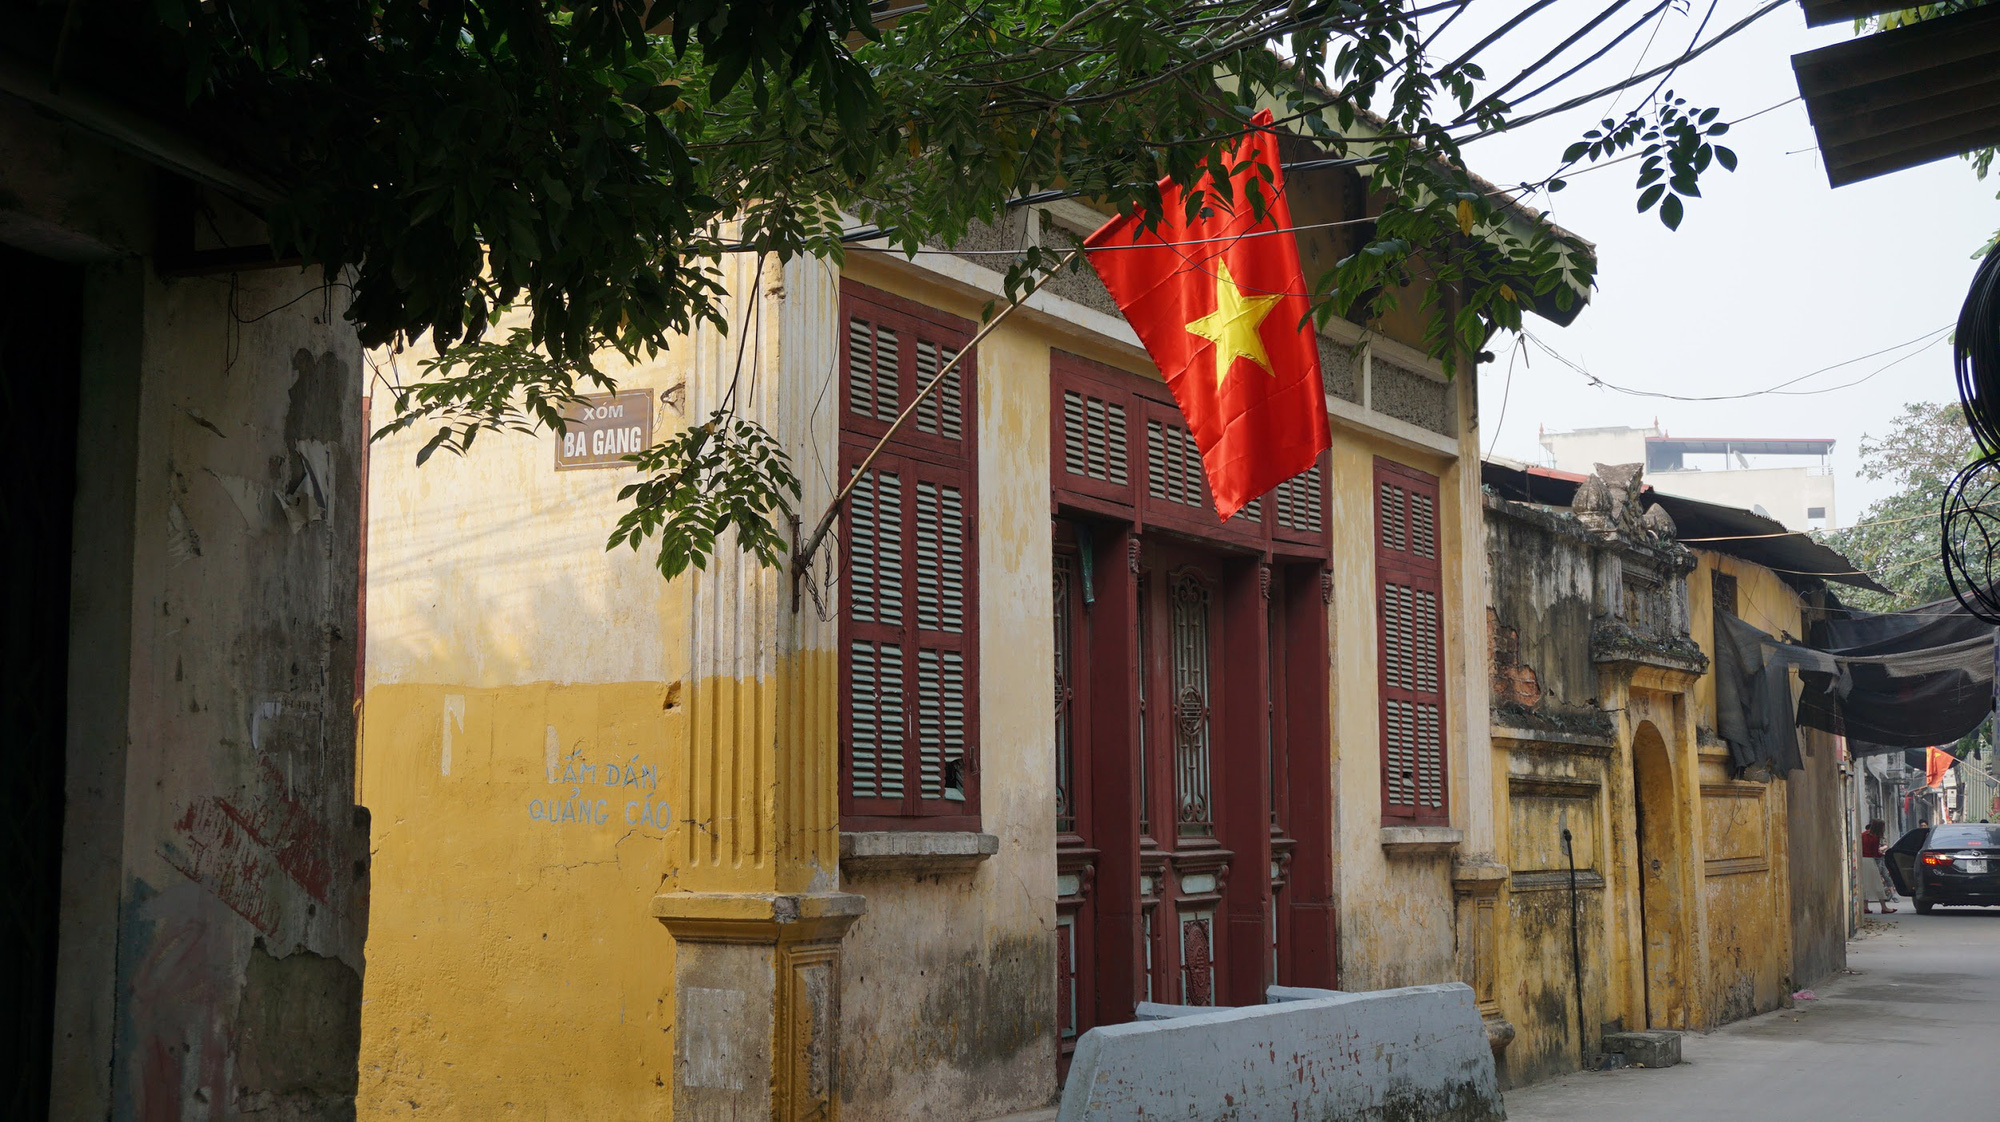 Bí ẩn ngôi nhà “đỏ rực” nổi tiếng nhất nhì làng cổ Cự Đà - Ảnh 1.